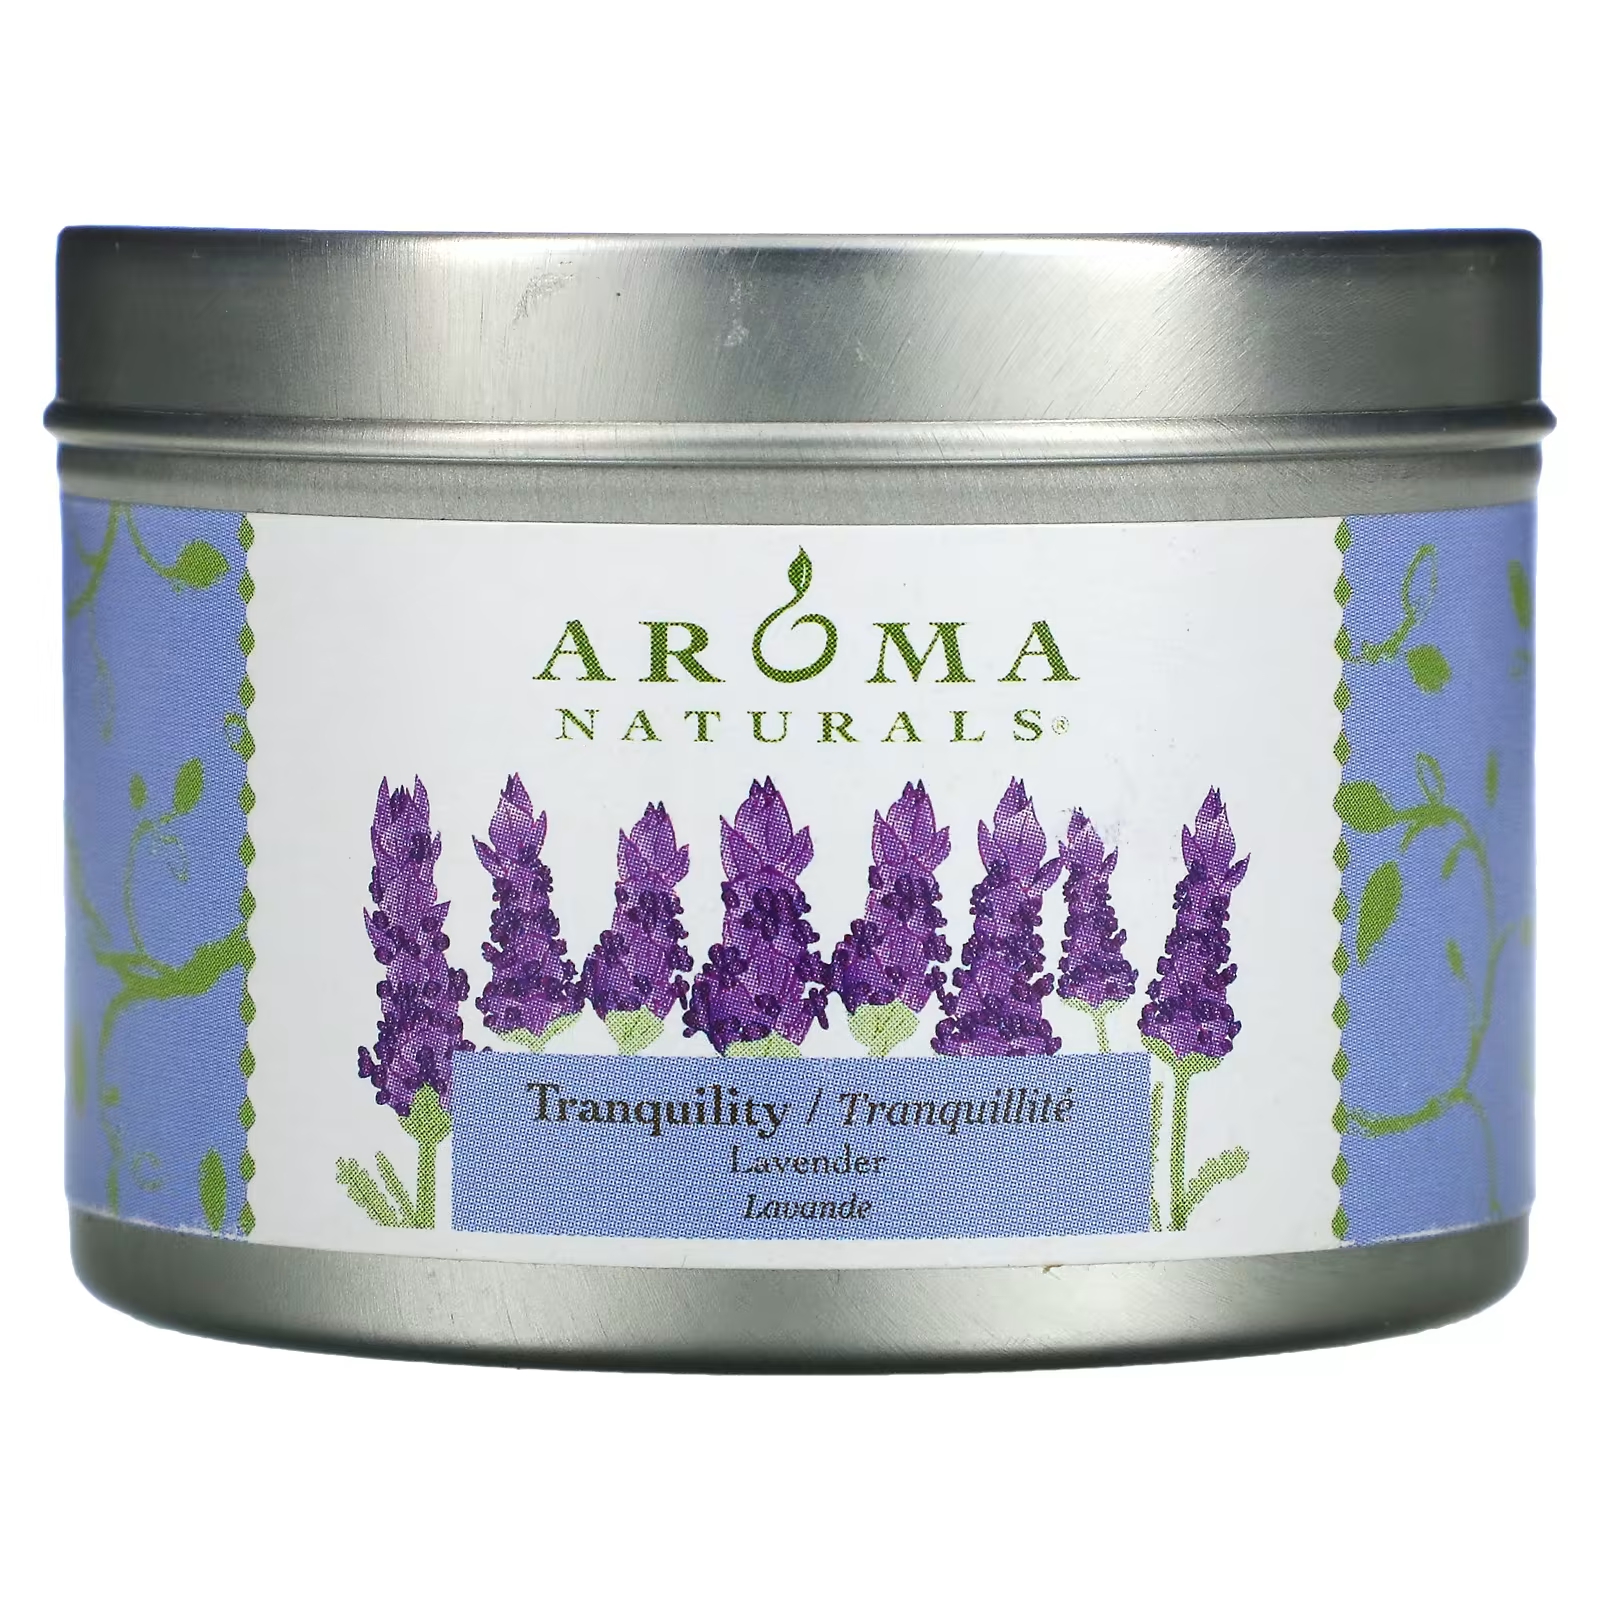 Ароматическая свеча Aroma Naturals Soy VegePure Tranquility с ароматом лаванды, 79,38 г цена и фото